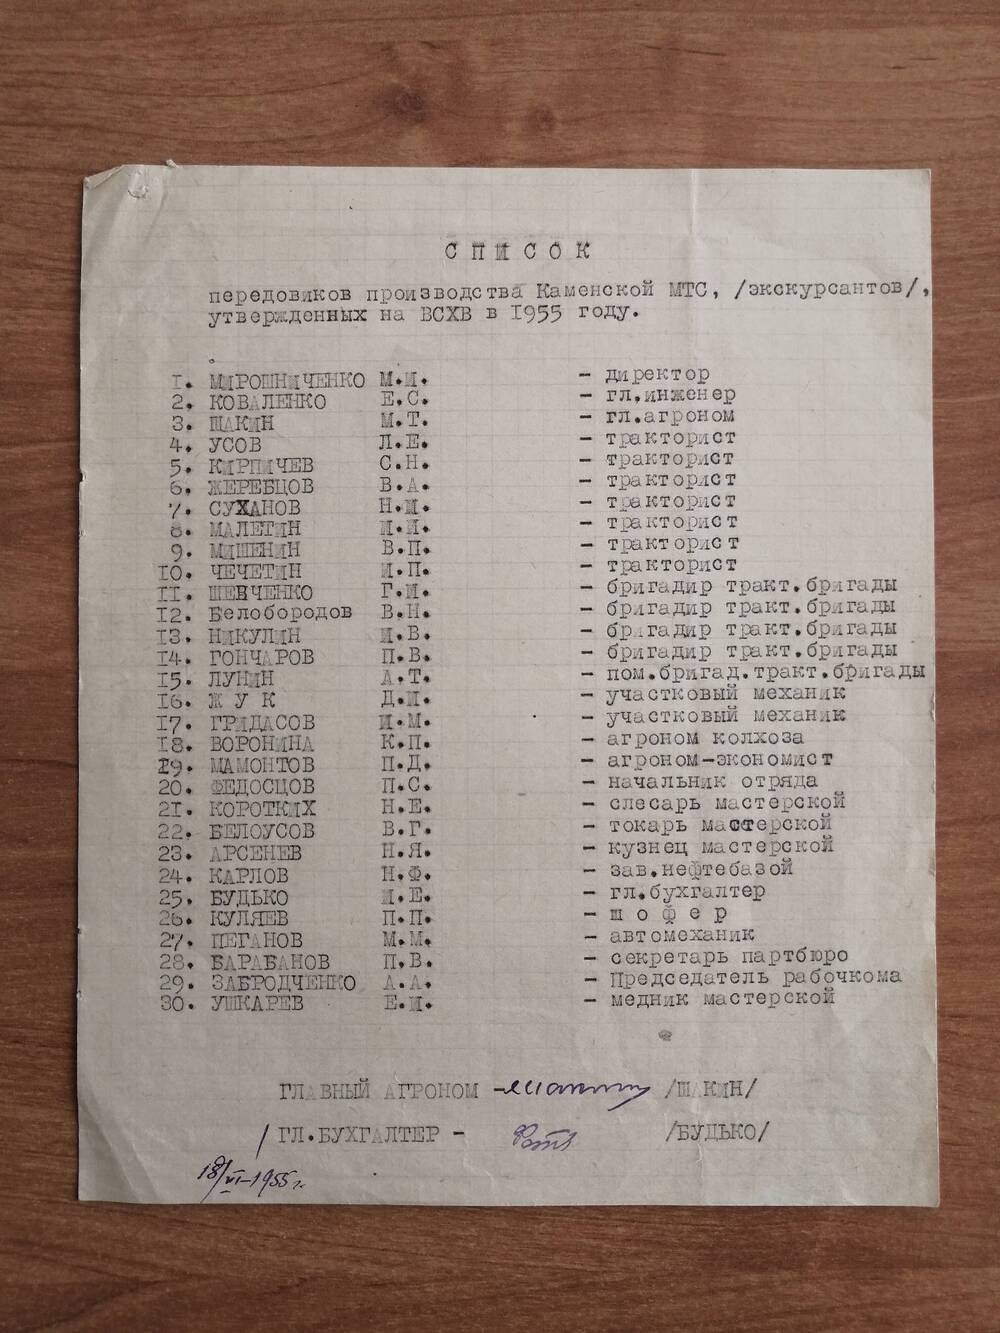 Список передовиков производства Каменской МТС (экскурсантов), утвержденных на ВСХВ в 1955 году.